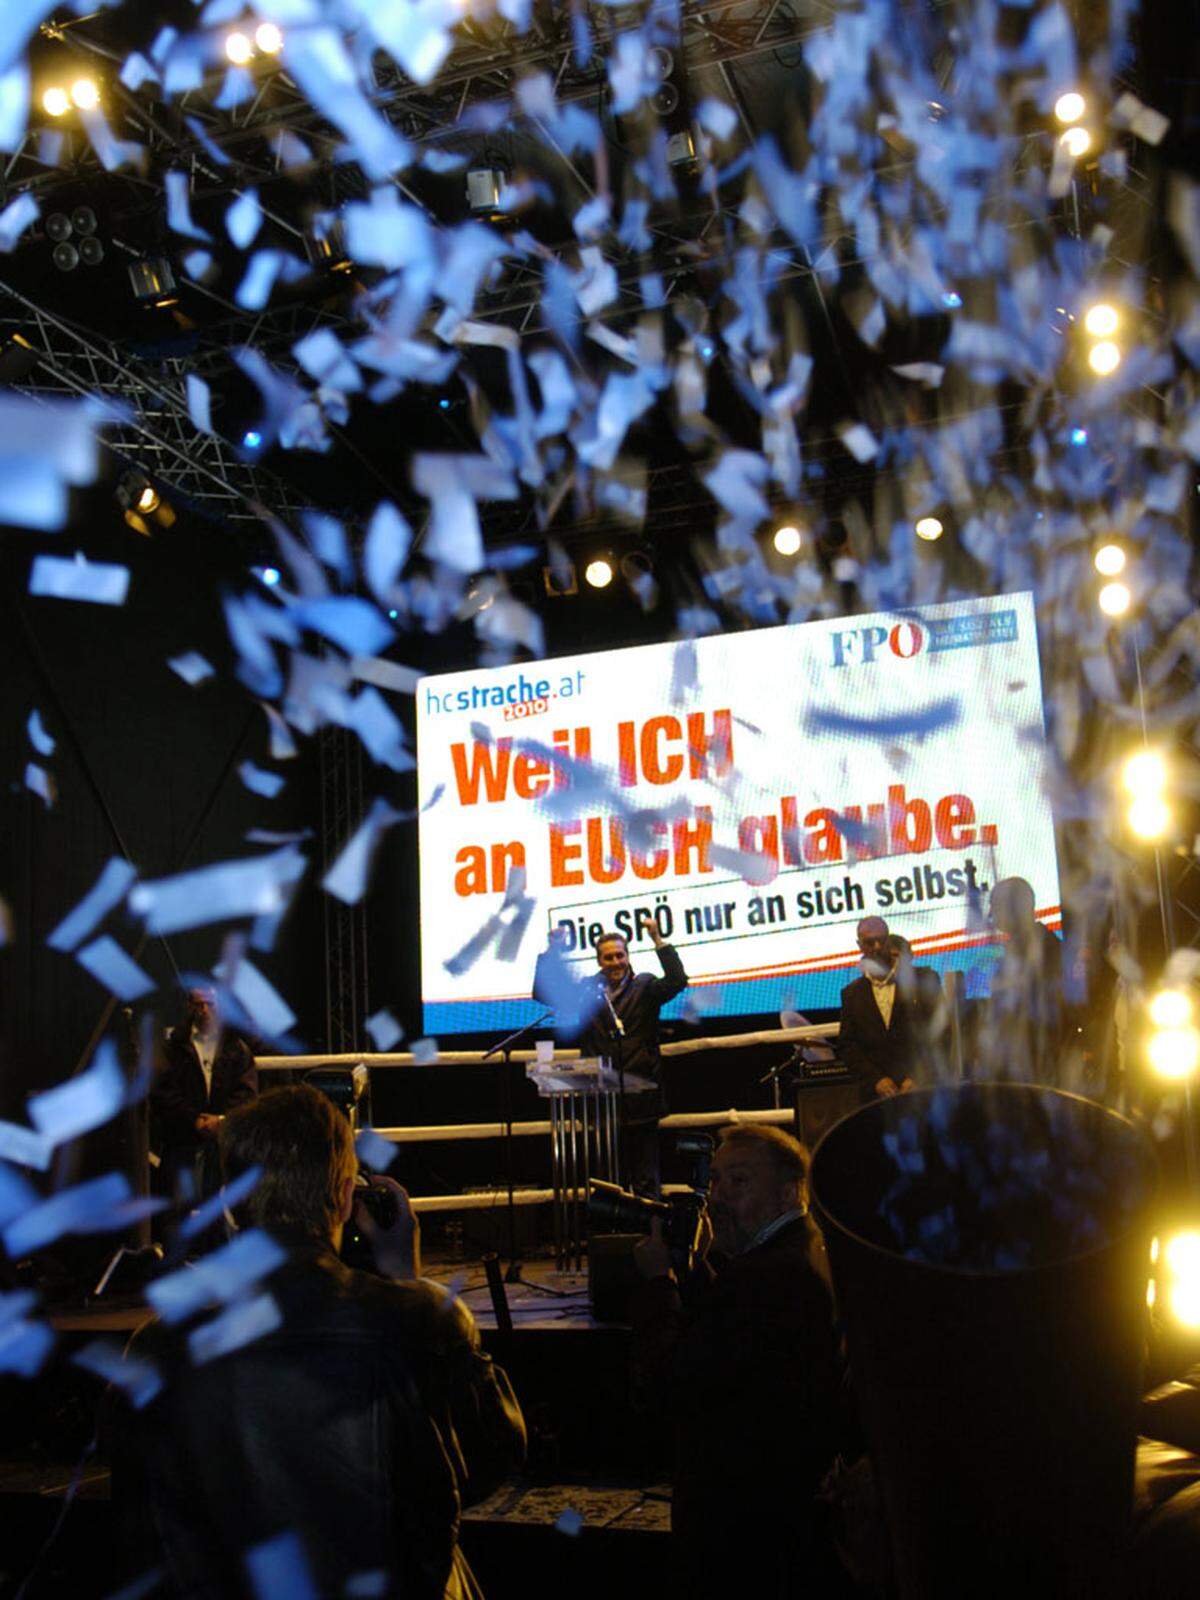 Nach eineinhalb Stunden endet der Auftritt des FPÖ-Spitzenkandidaten durch das Absingen der Bundeshymne und mit einem Regen aus blauen Papierschnitzeln.